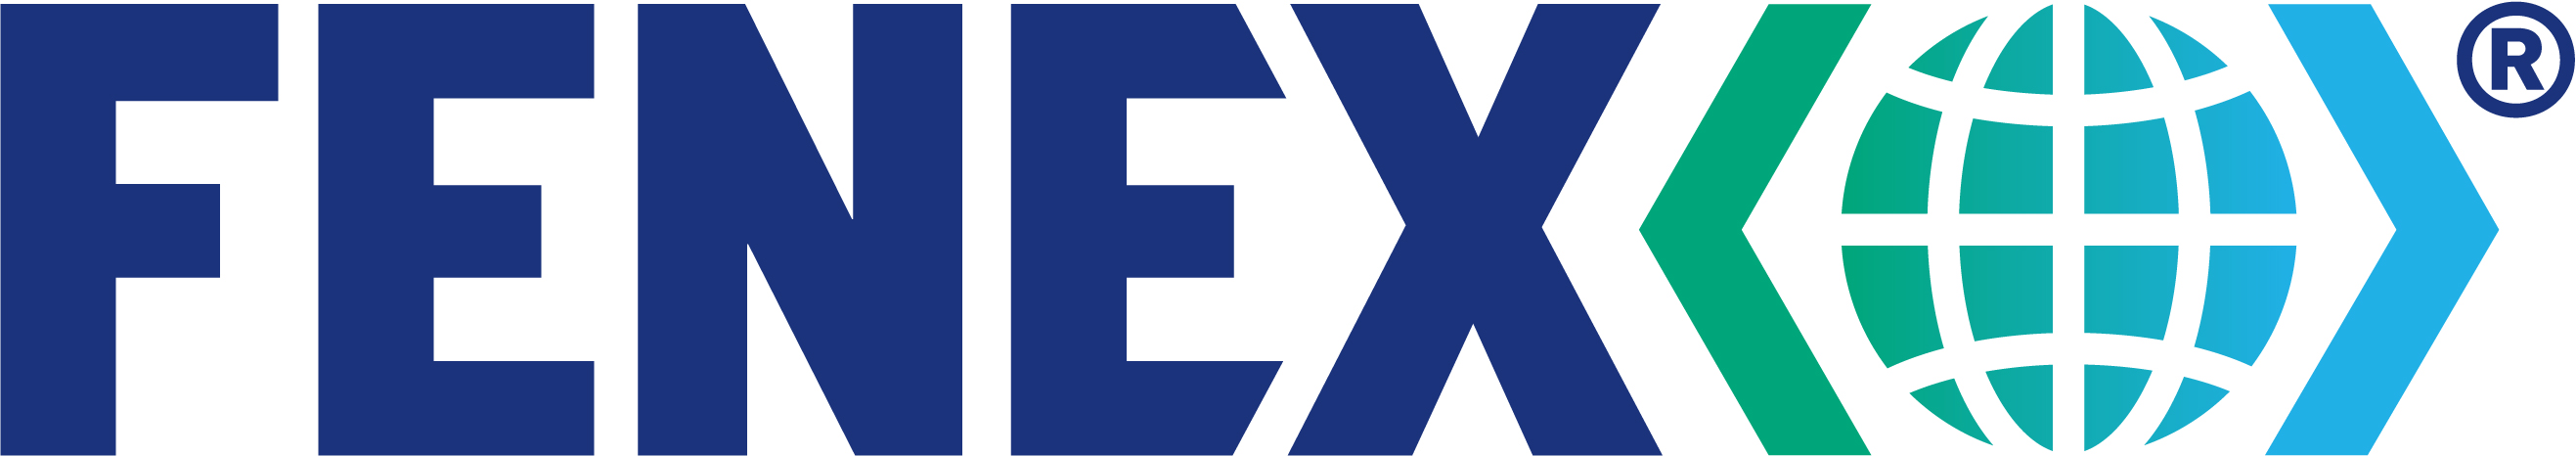 Fenex member